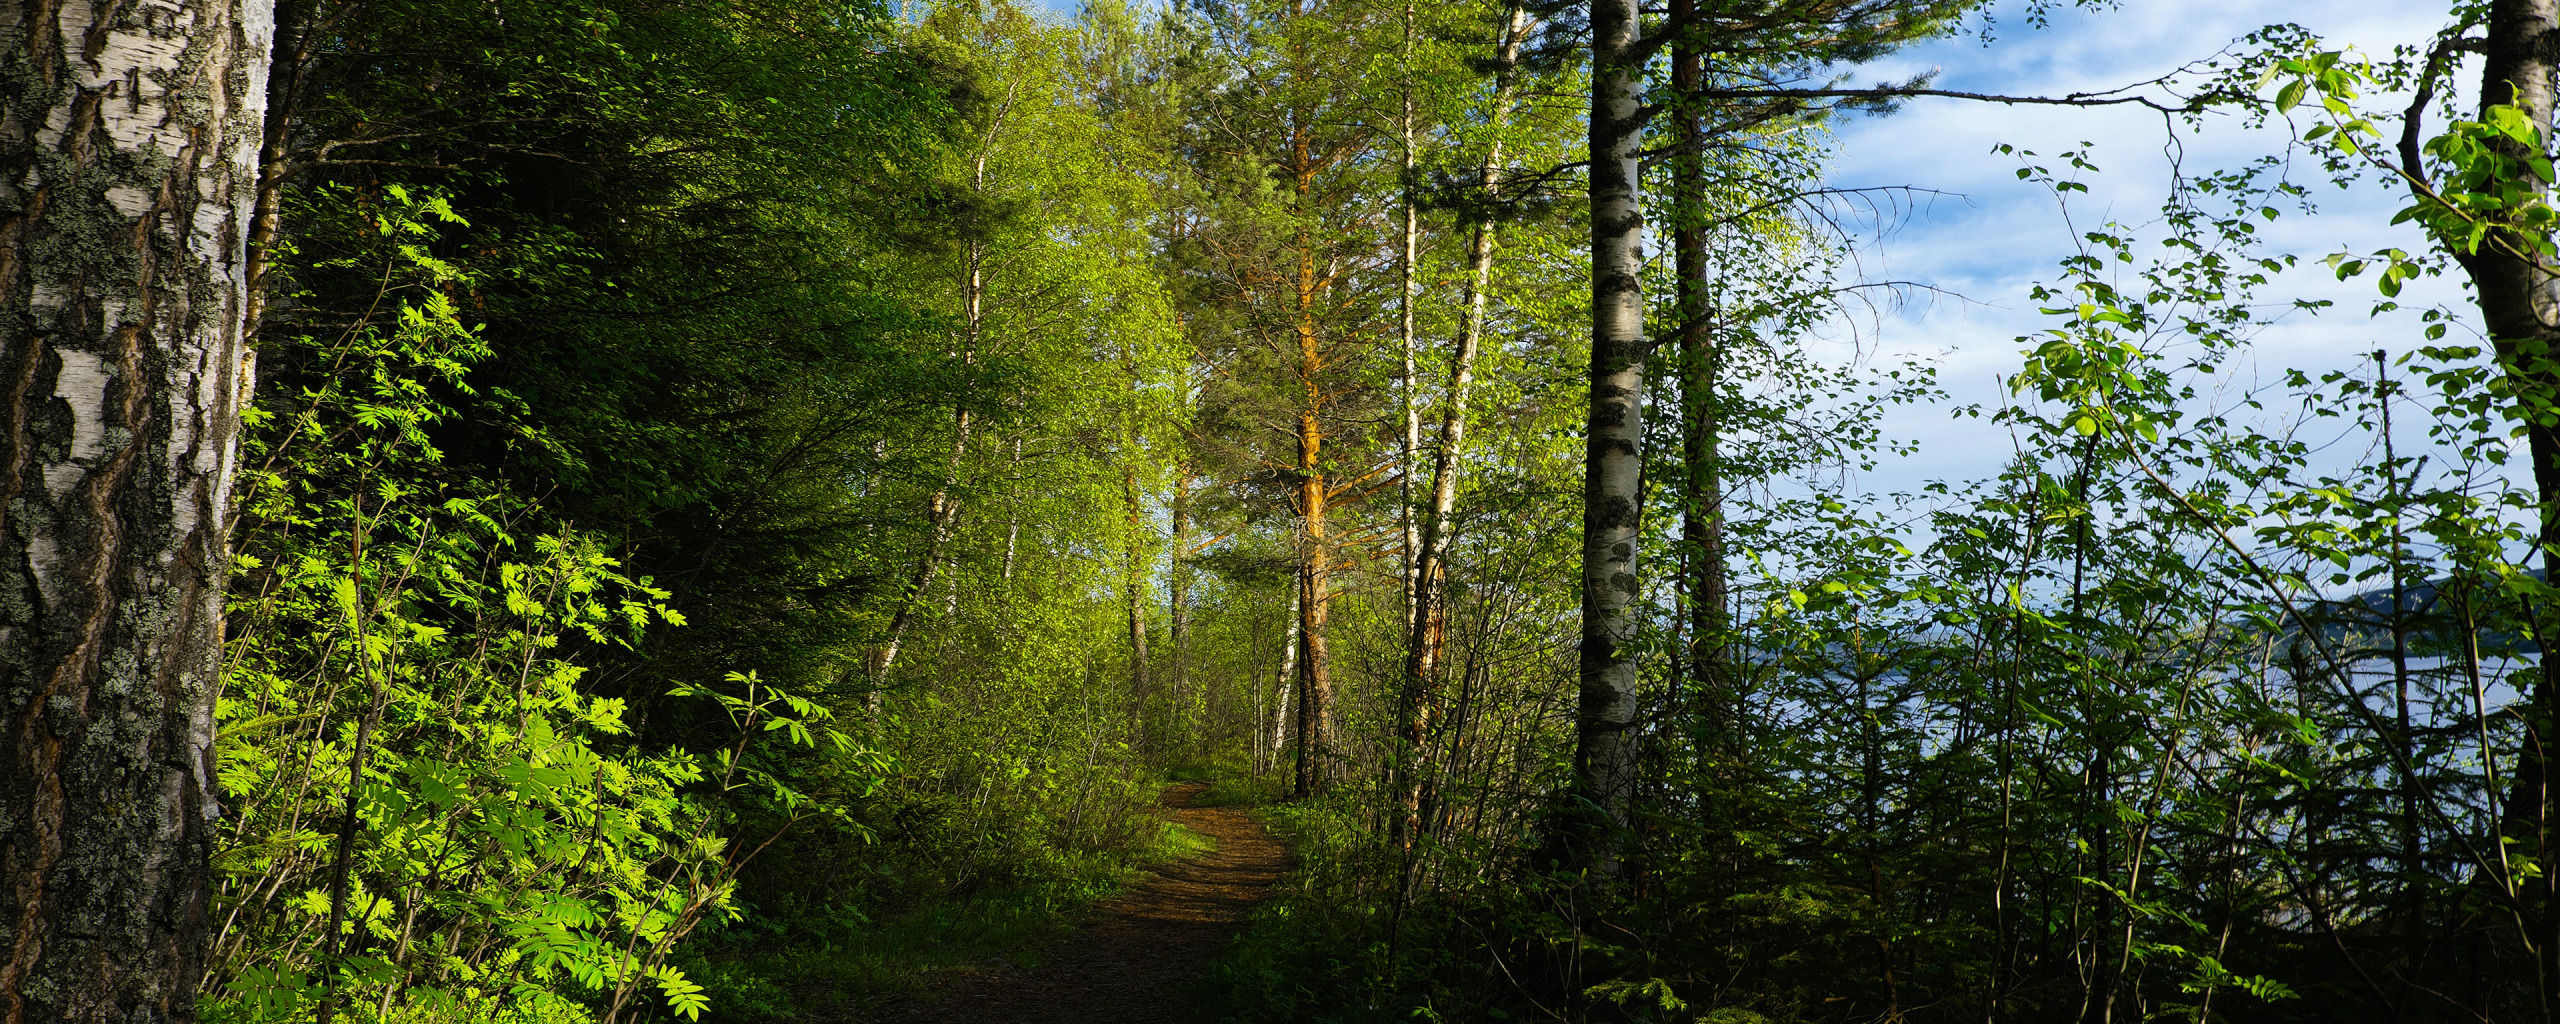 Лесной з. Новоуральск лес. Лесополоса березы. Пейзаж зелень леса. Парк Новоуральск лес.